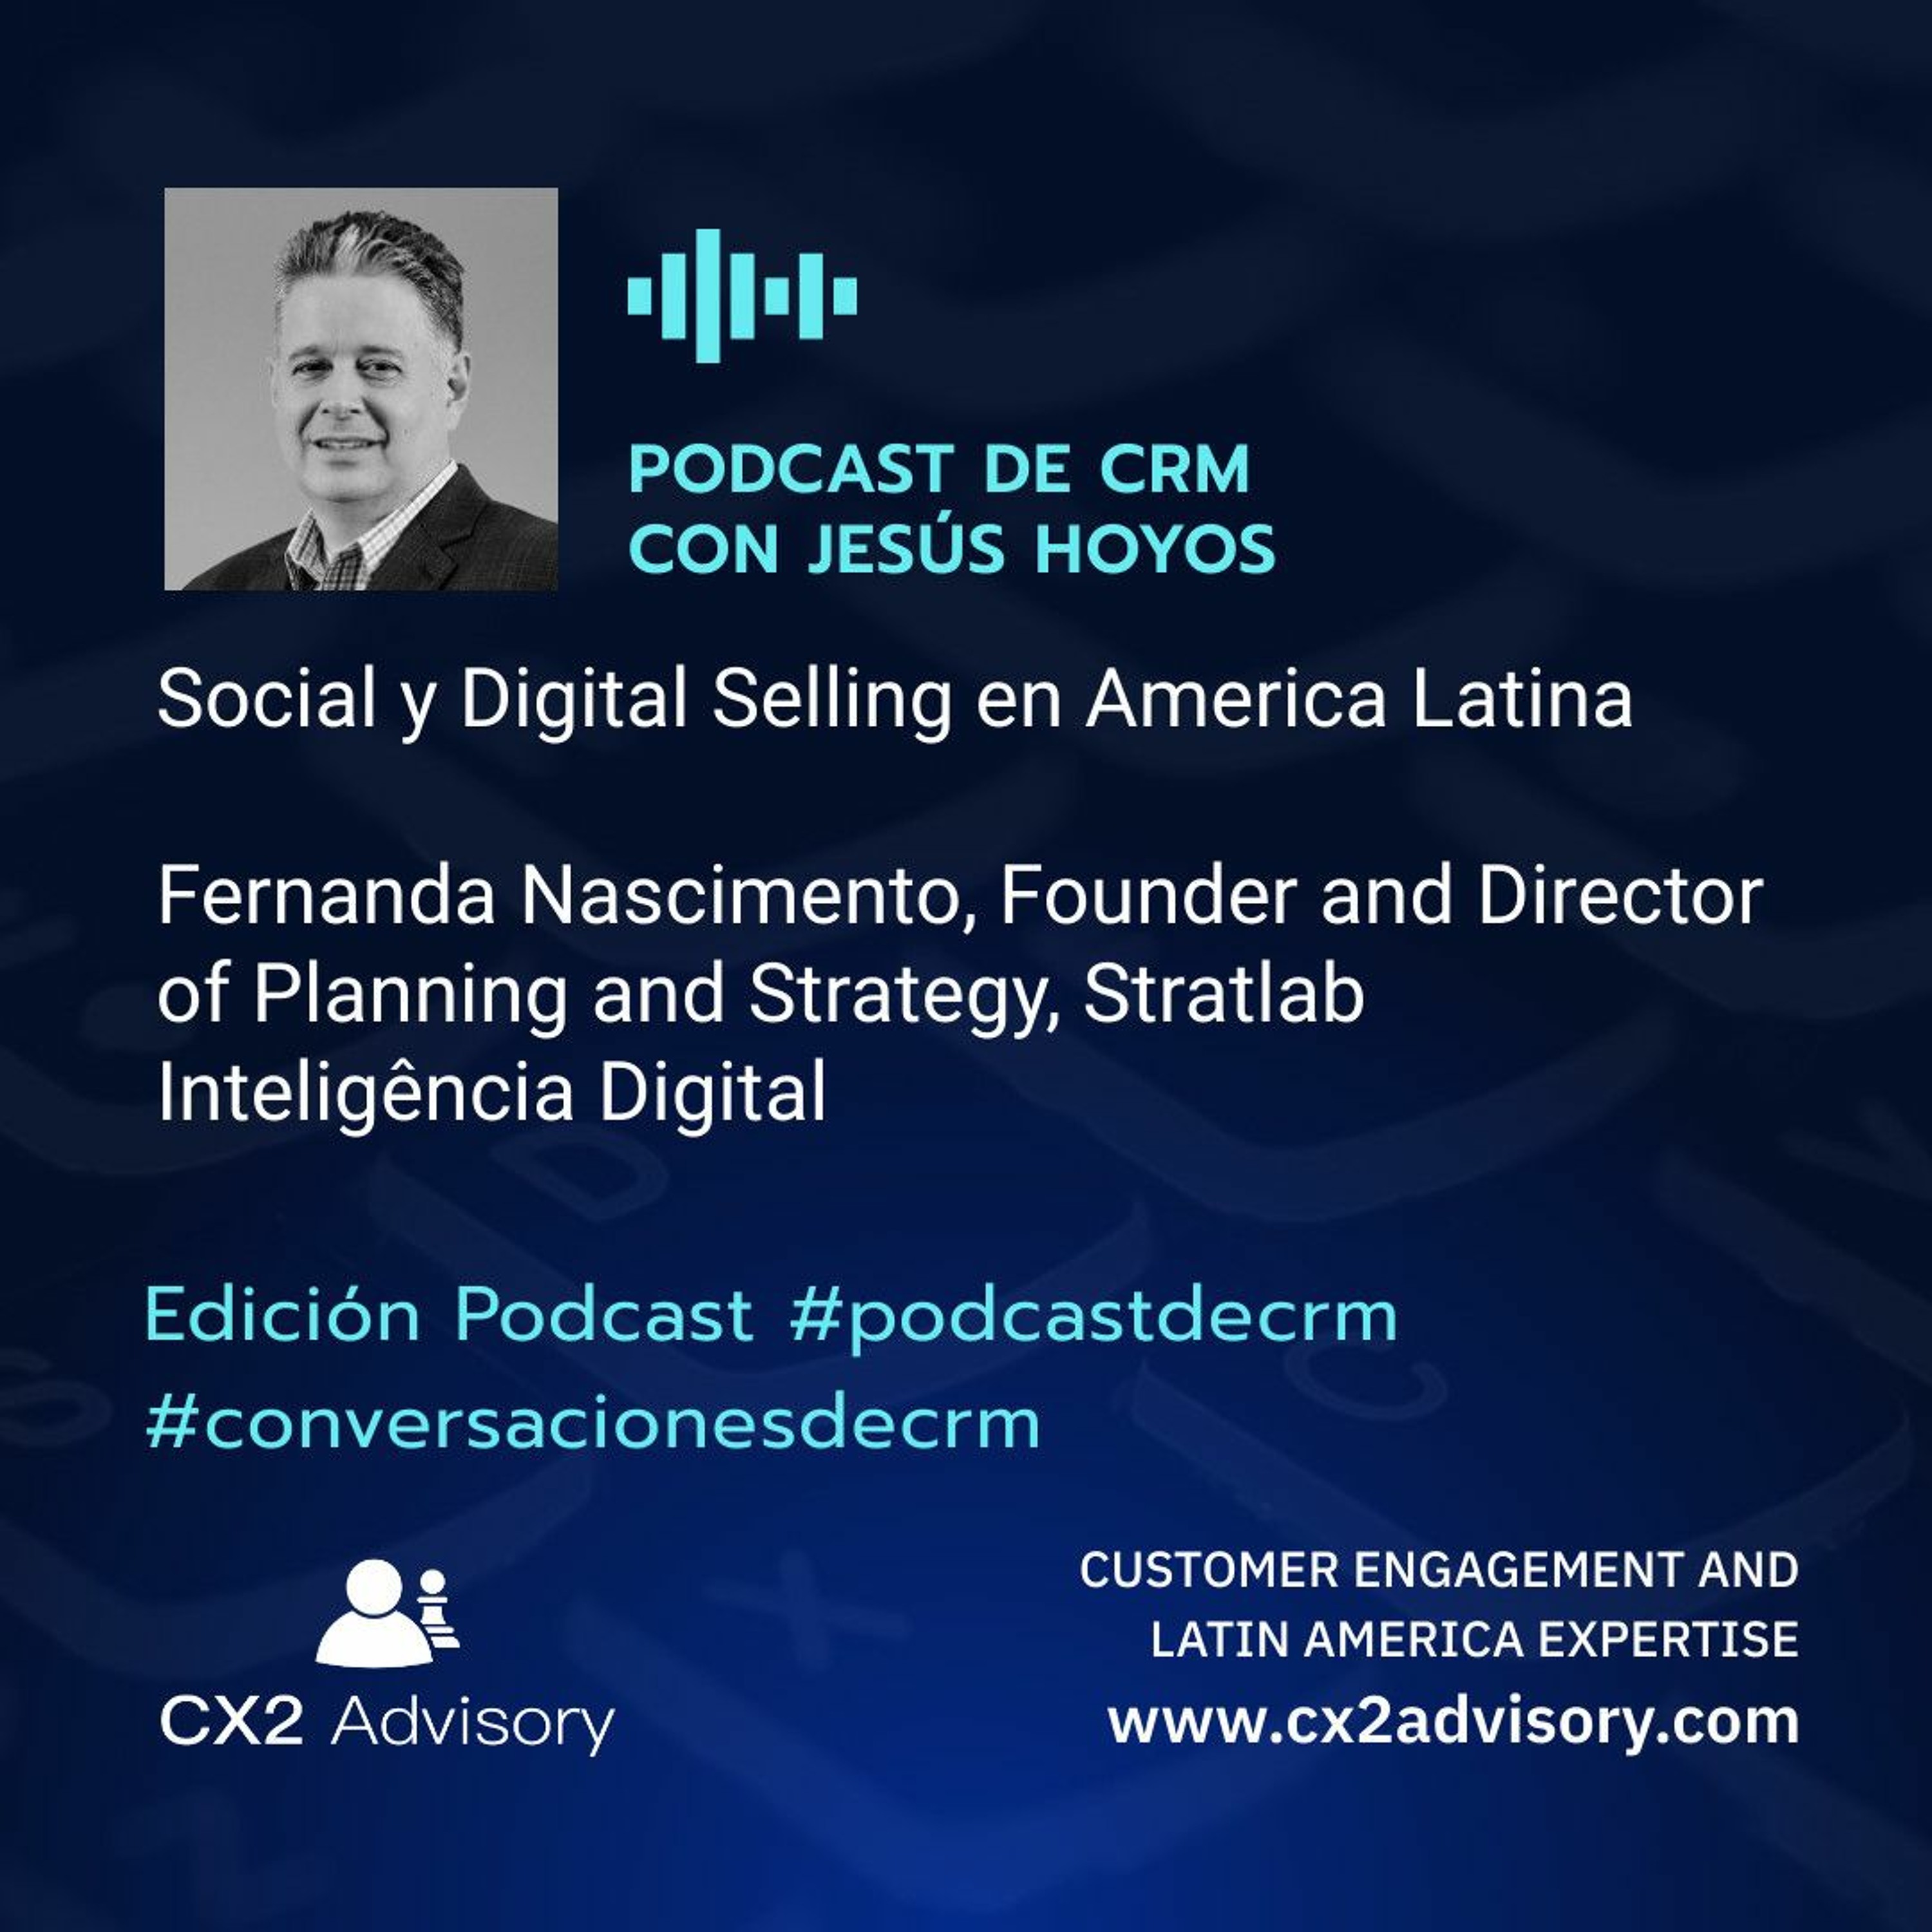 Edición Podcast - Conversaciones De CRM  Social Y Digital Selling En America Latina